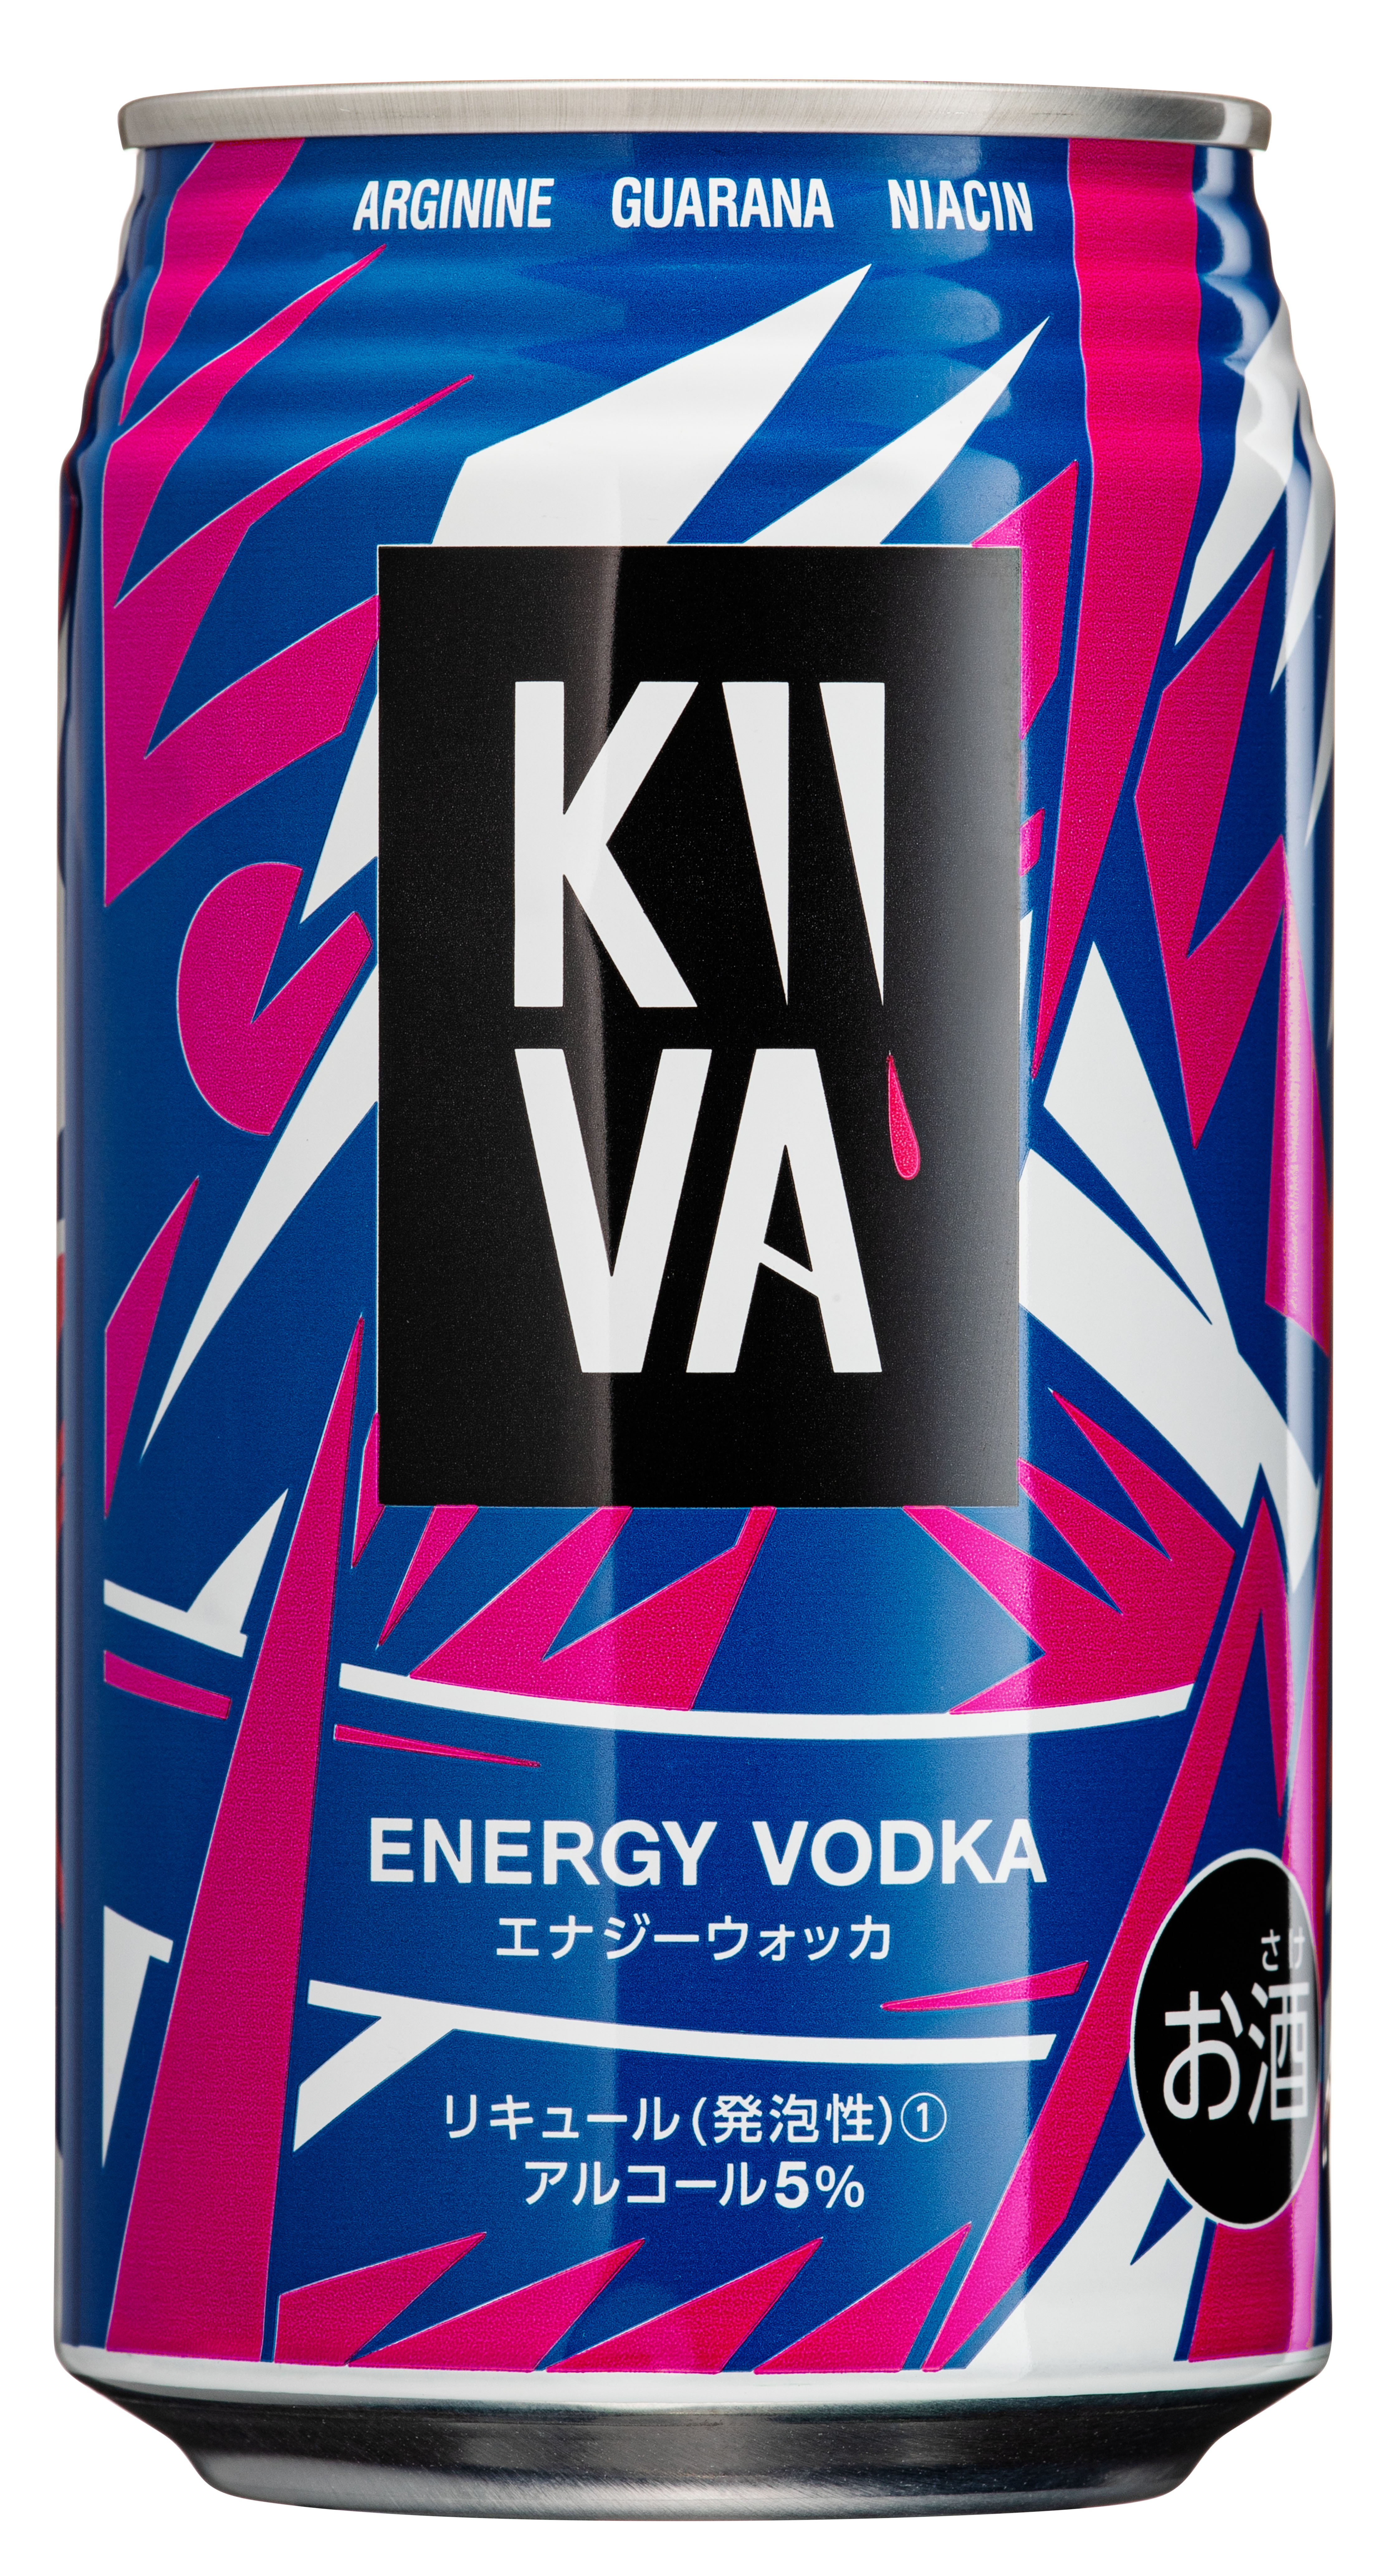 エナジードリンクブランド Kiiva キーバ が新アルコール商品 キーバエナジーウォッカ 発売 キーバ株式会社のプレスリリース